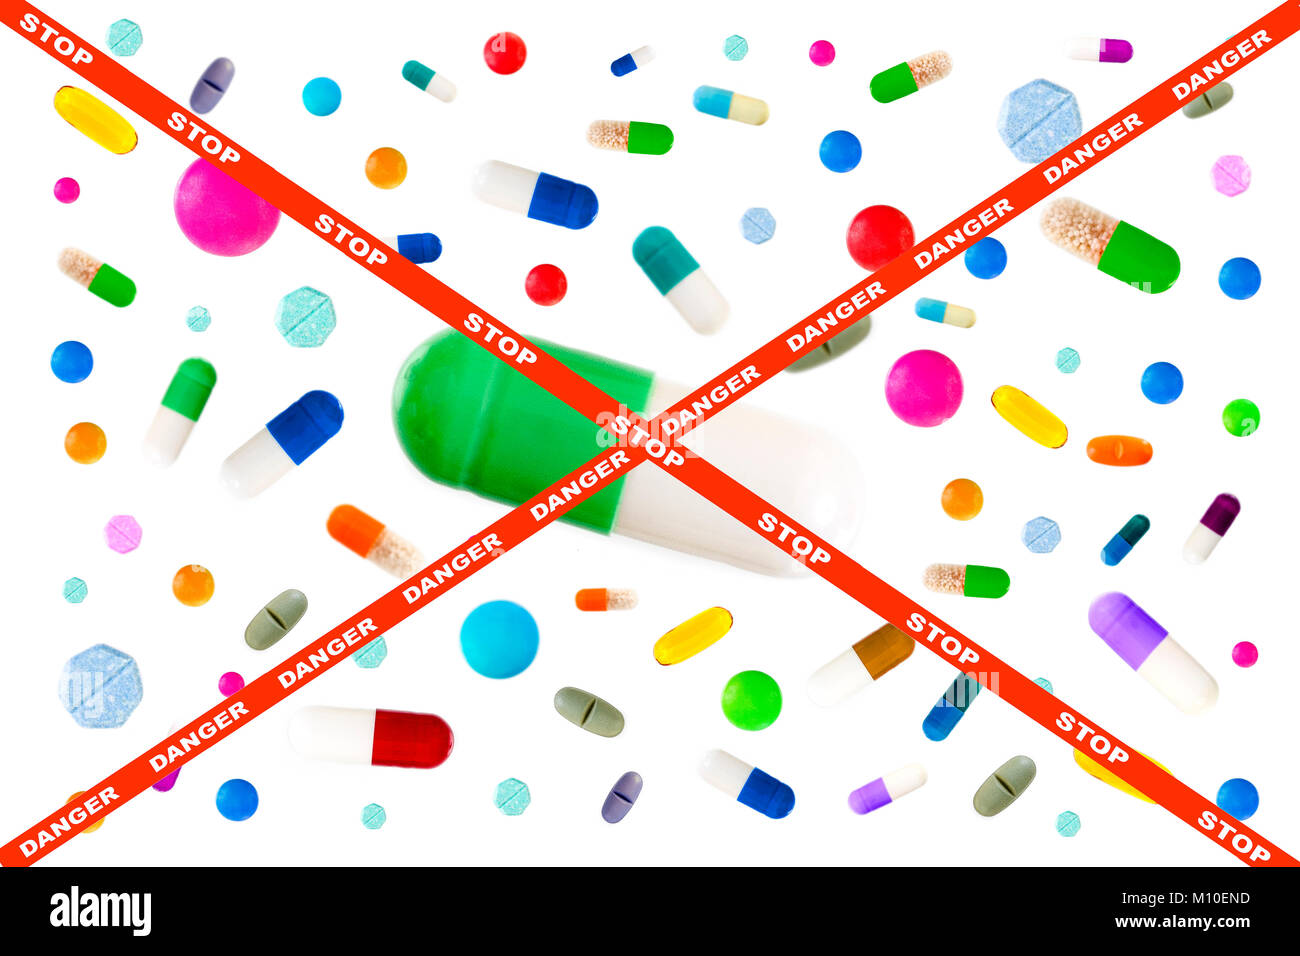 Bild quer durch Anhalten und Gefahr auf Red Ribbon, Symbol Bild von Drogen Gefahr: Viele bunte Arzneimittel. Pillen und Kapseln auf weißem Hintergrund Stockfoto